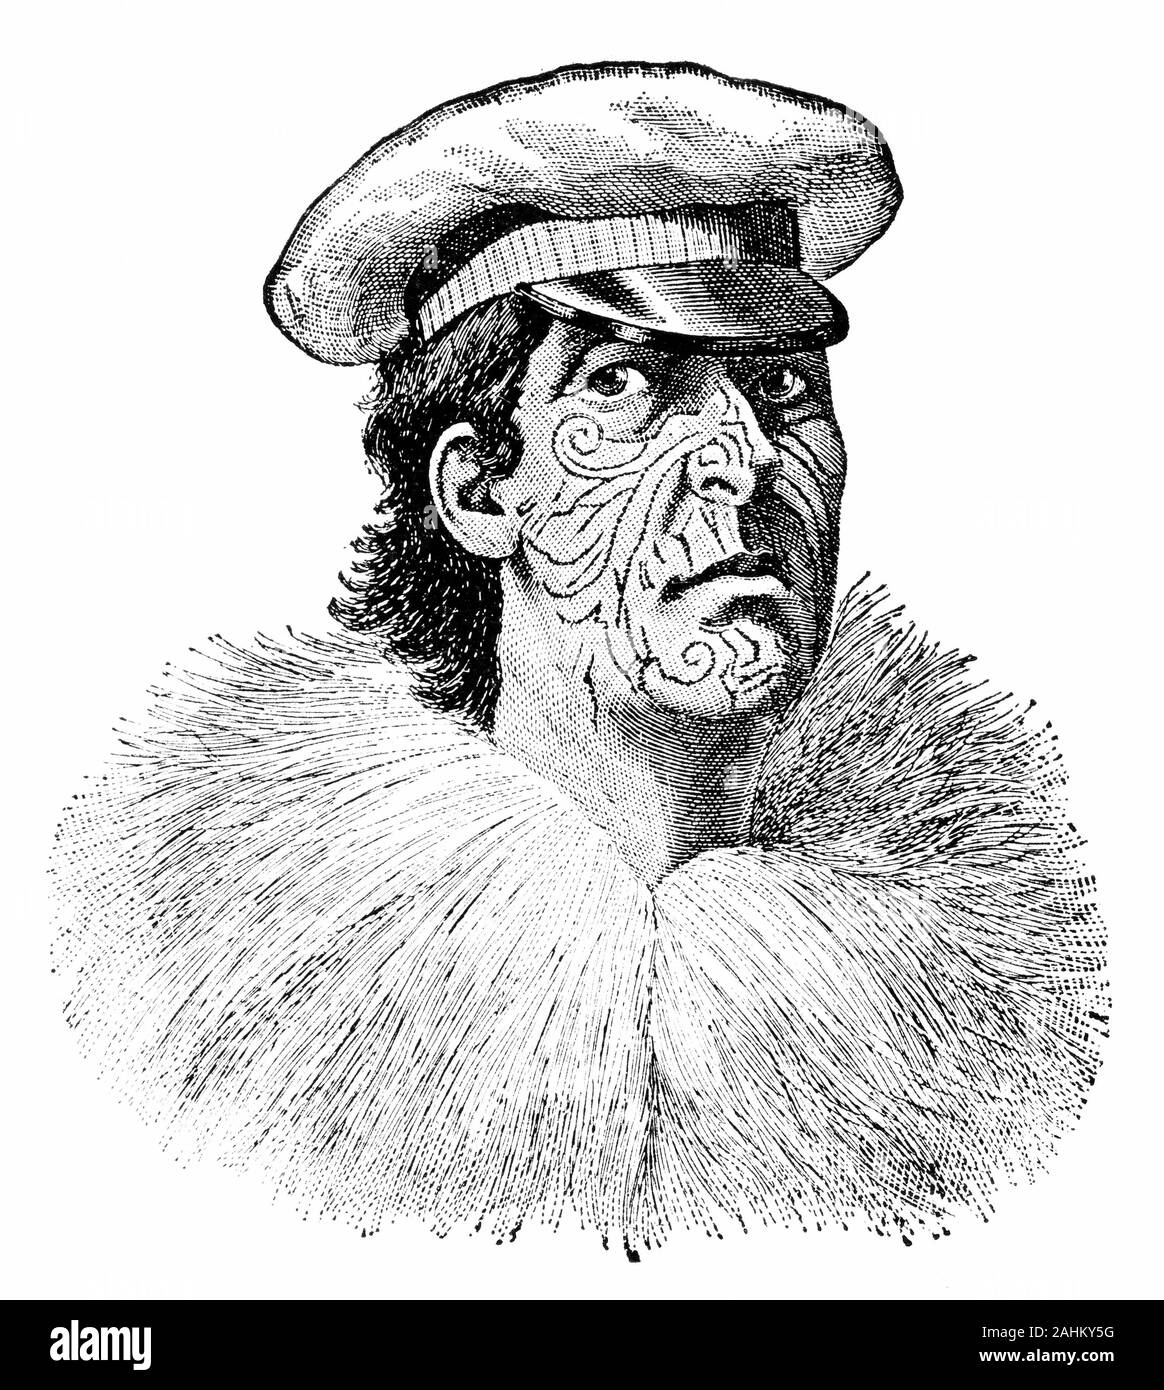 Ritratto inciso di Hōne Wiremu Heke Pōkai (c. 1807/1808 - 1850), nato Heke Pōkai e più tardi a cui spesso viene fatto riferimento come Hōne Heke, un estremamente influente Māori rangatira (chief) dell'Ngāpuhi iwi (tribù) e un leader di guerra nell'Isola del nord della Nuova Zelanda; egli è ricordato soprattutto per avviare il Flagstaff guerra del 1845-46. Foto Stock